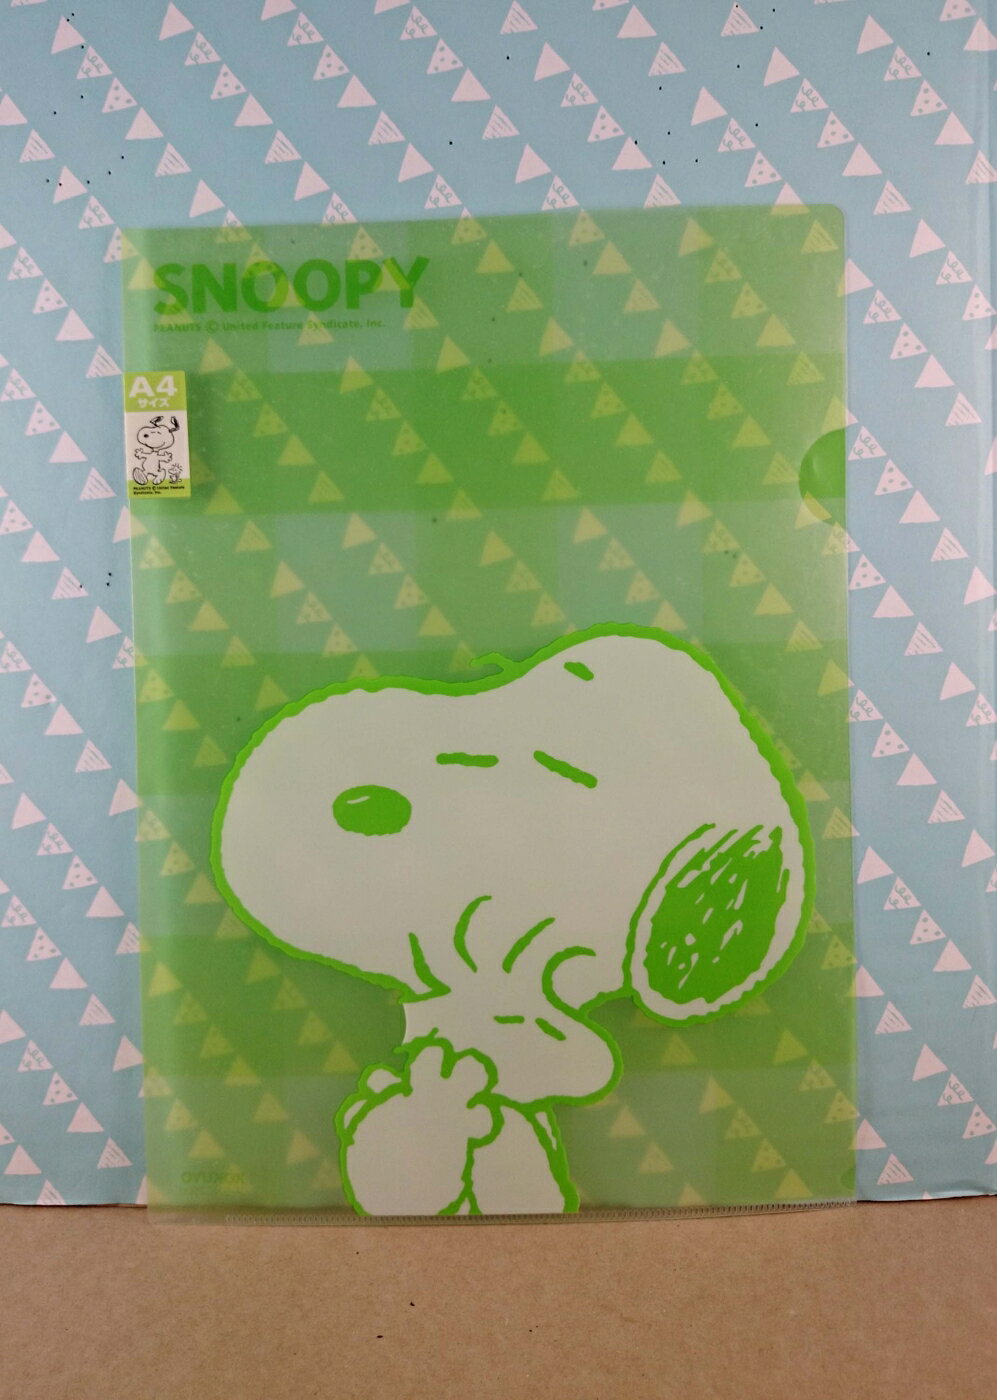 【震撼精品百貨】史奴比Peanuts Snoopy 文件夾 綠色 震撼日式精品百貨